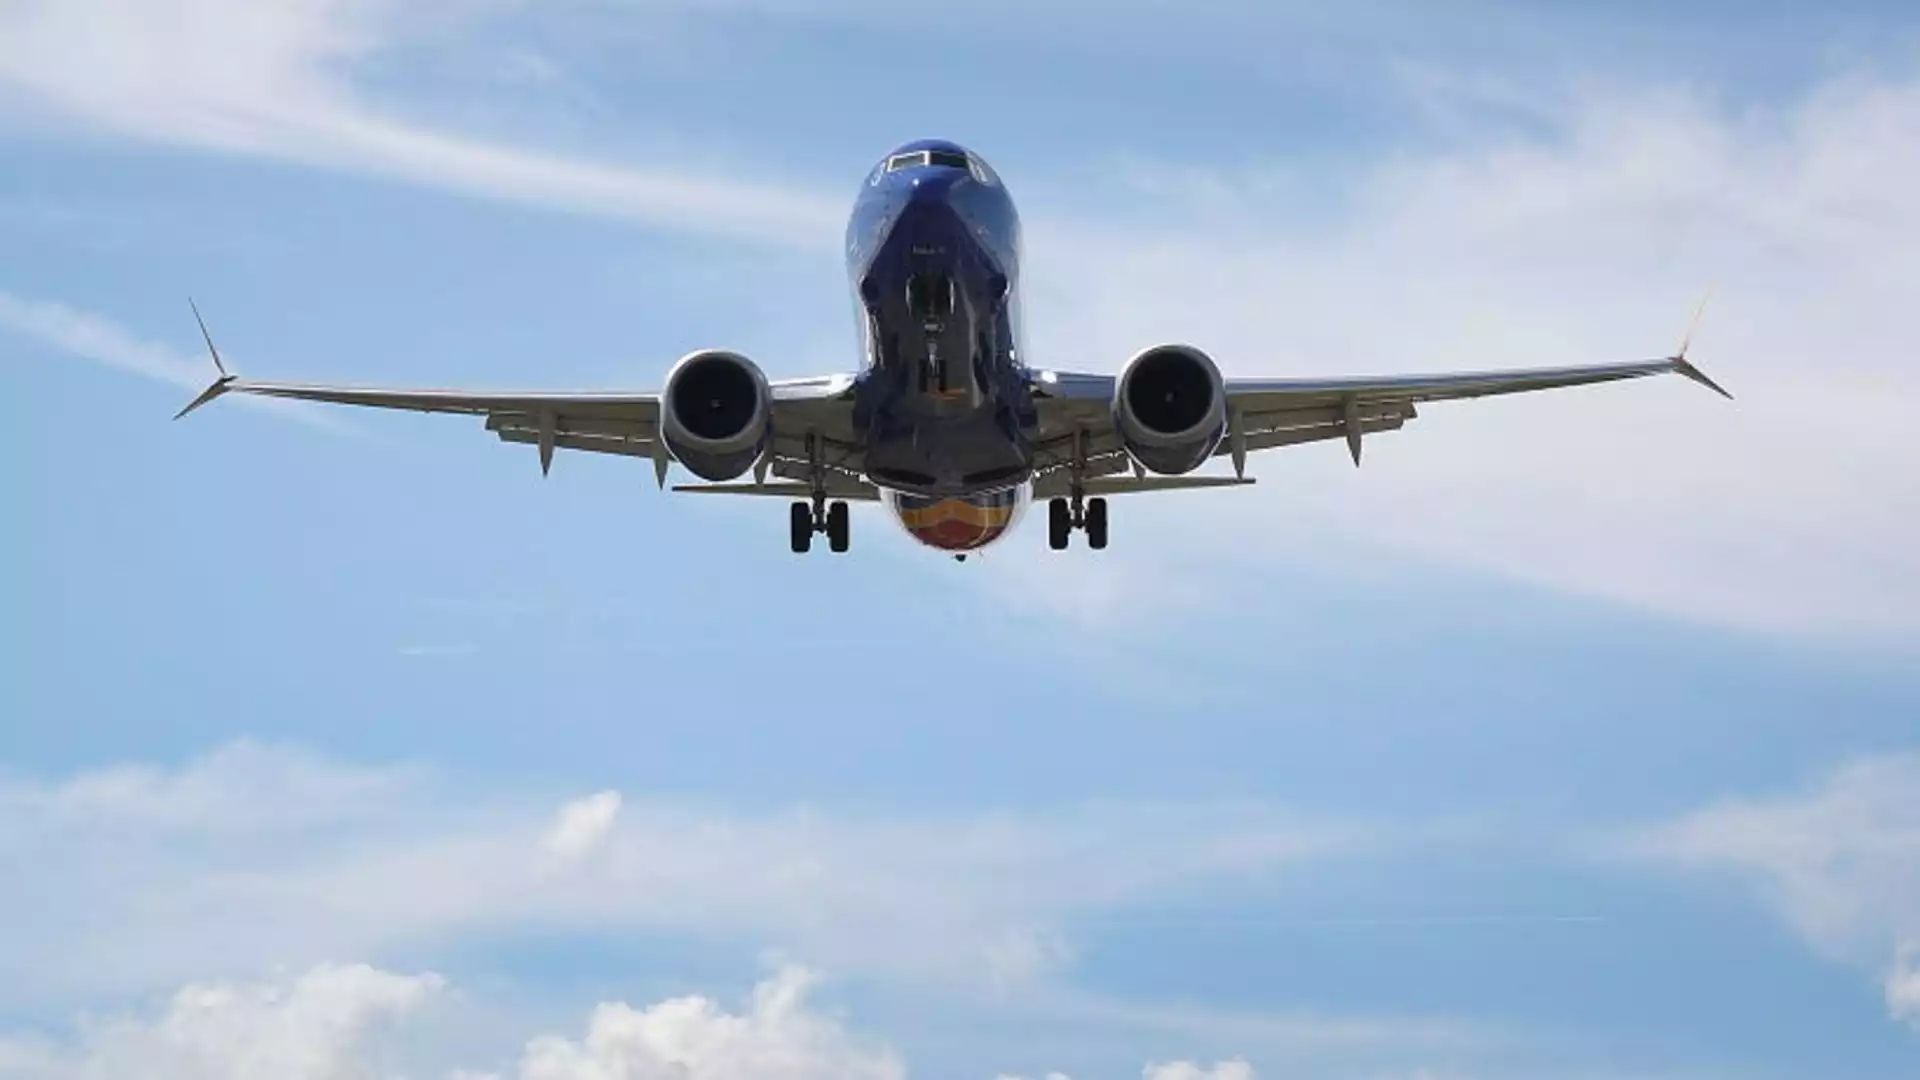 Пак проблеми с Boeing: Самолет кацна аварийно след пламнал двигател (ВИДЕО)